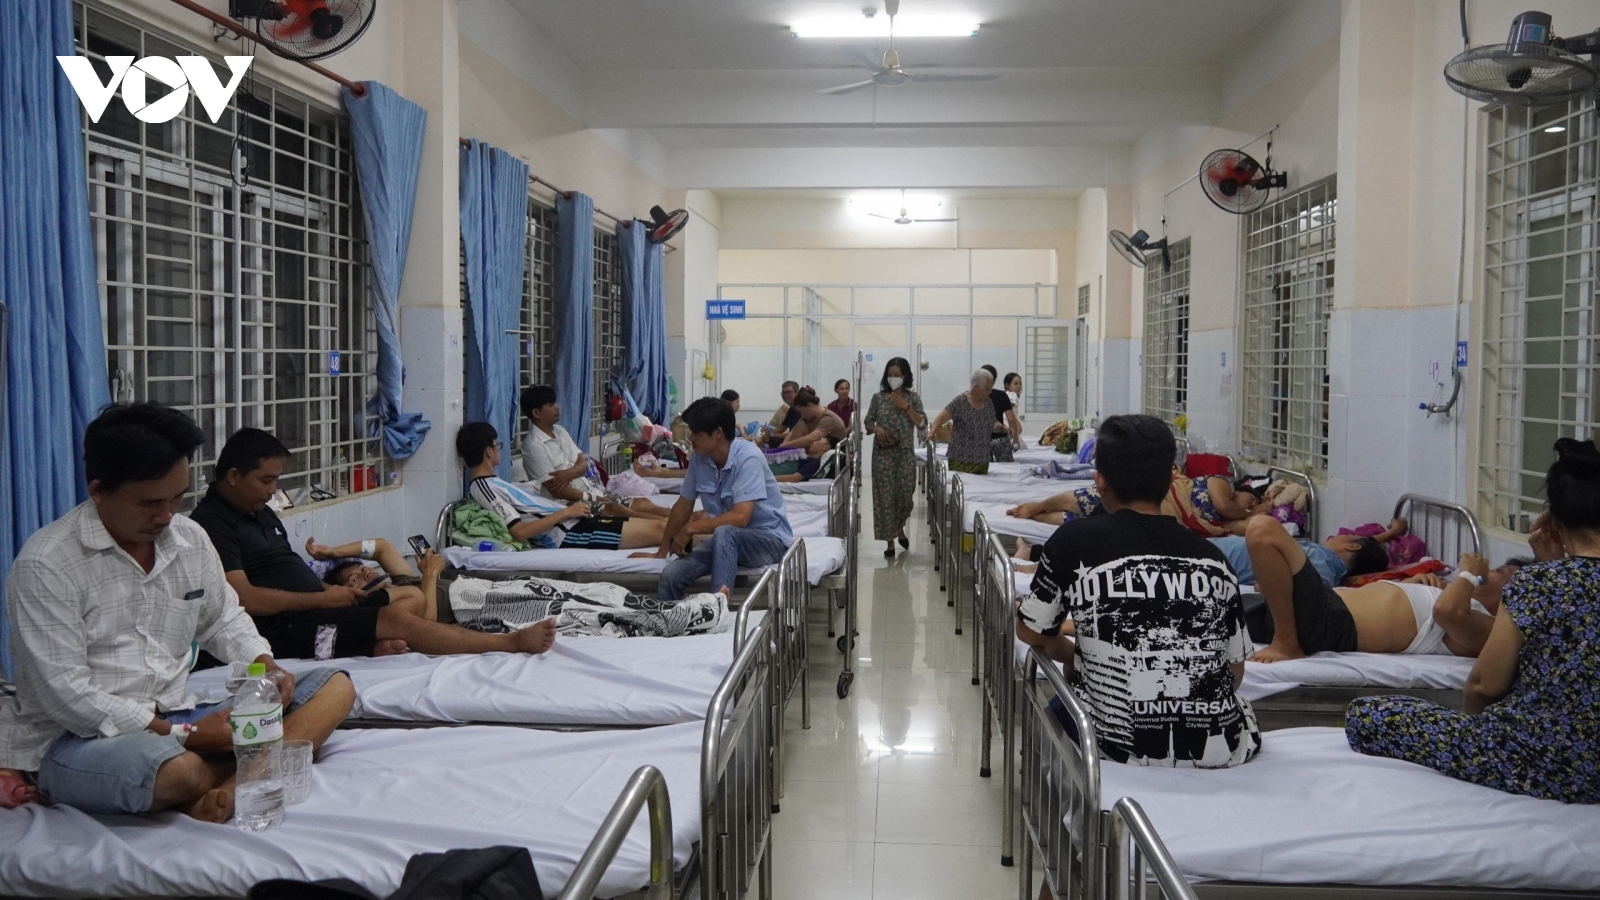 Hỗ trợ bệnh nhân khó khăn, học sinh nghỉ bệnh vụ ngộ độc bánh mỳ ở Đồng Nai